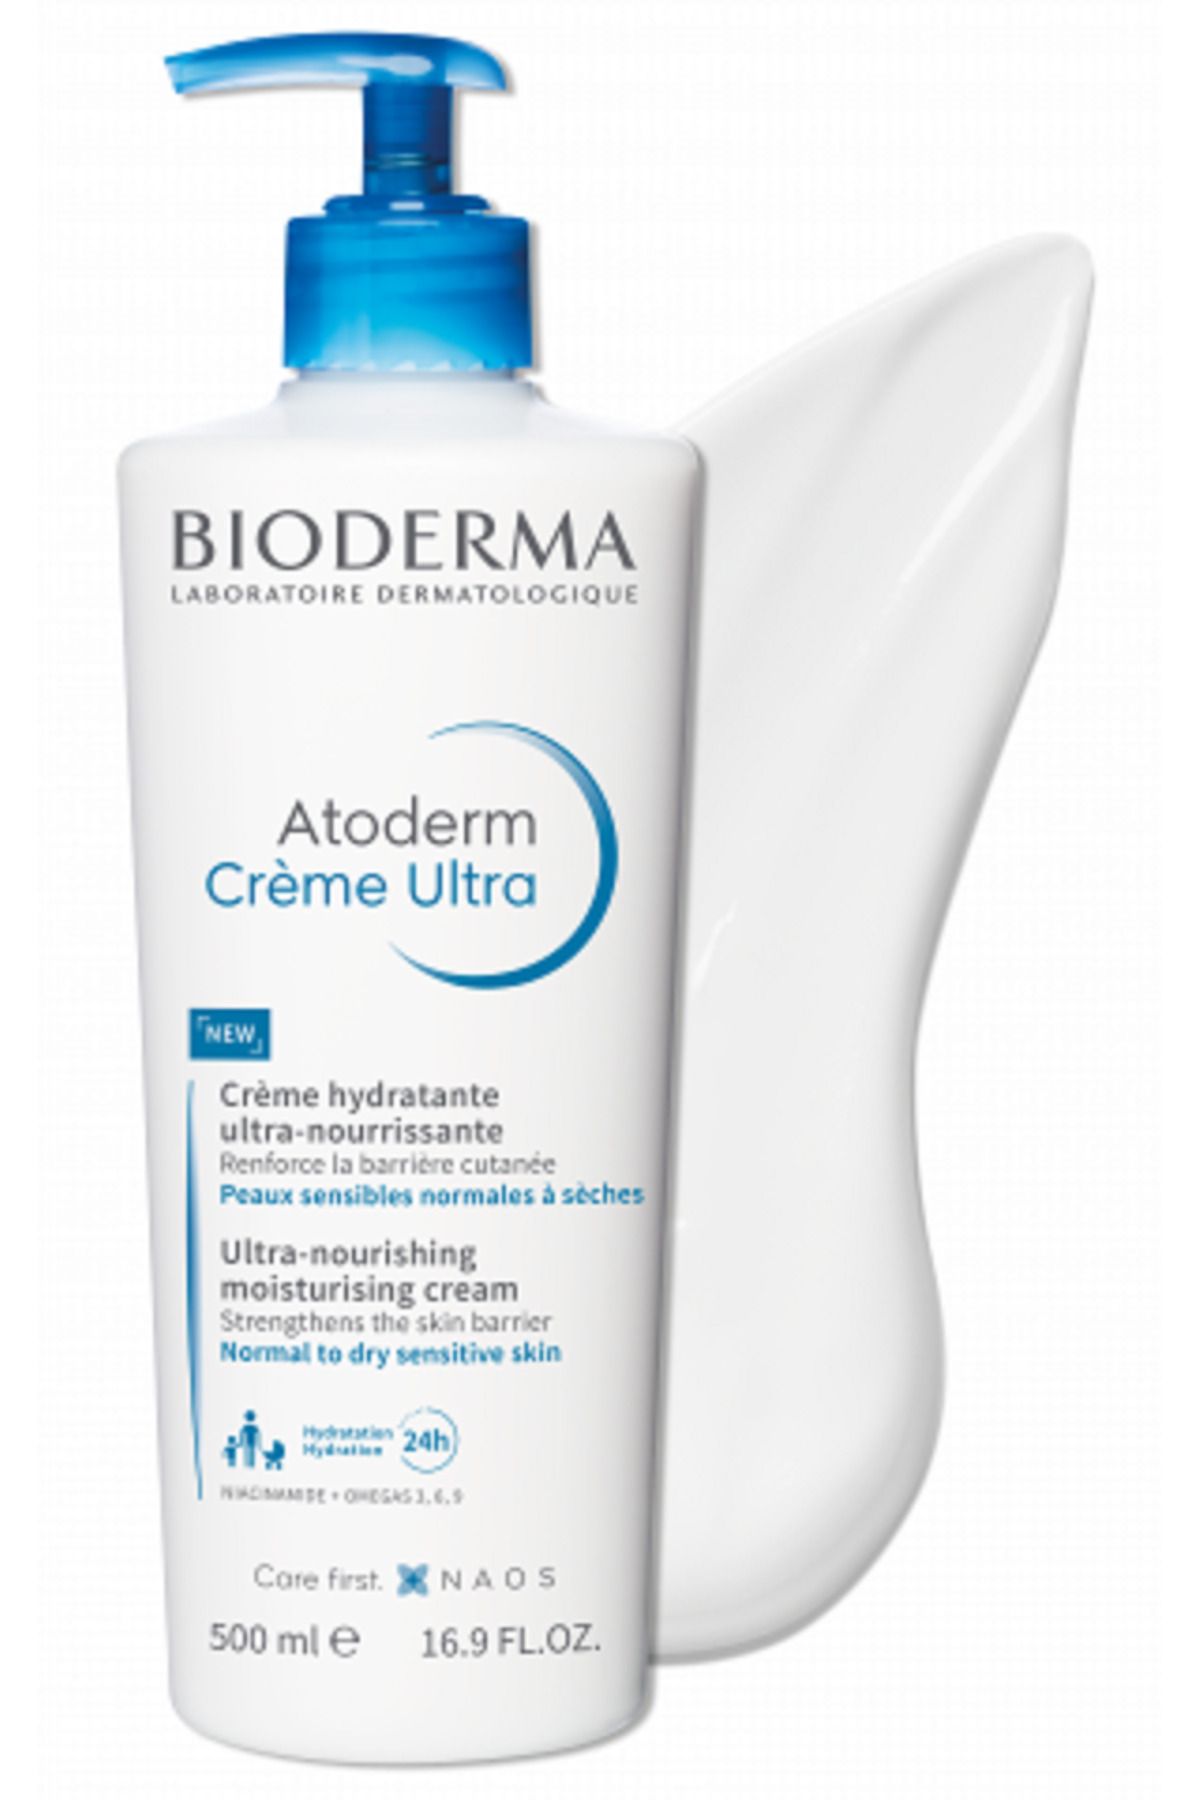 Bioderma Atoderm Cream Ultra Koruyucu Bakım Kremi 500ml